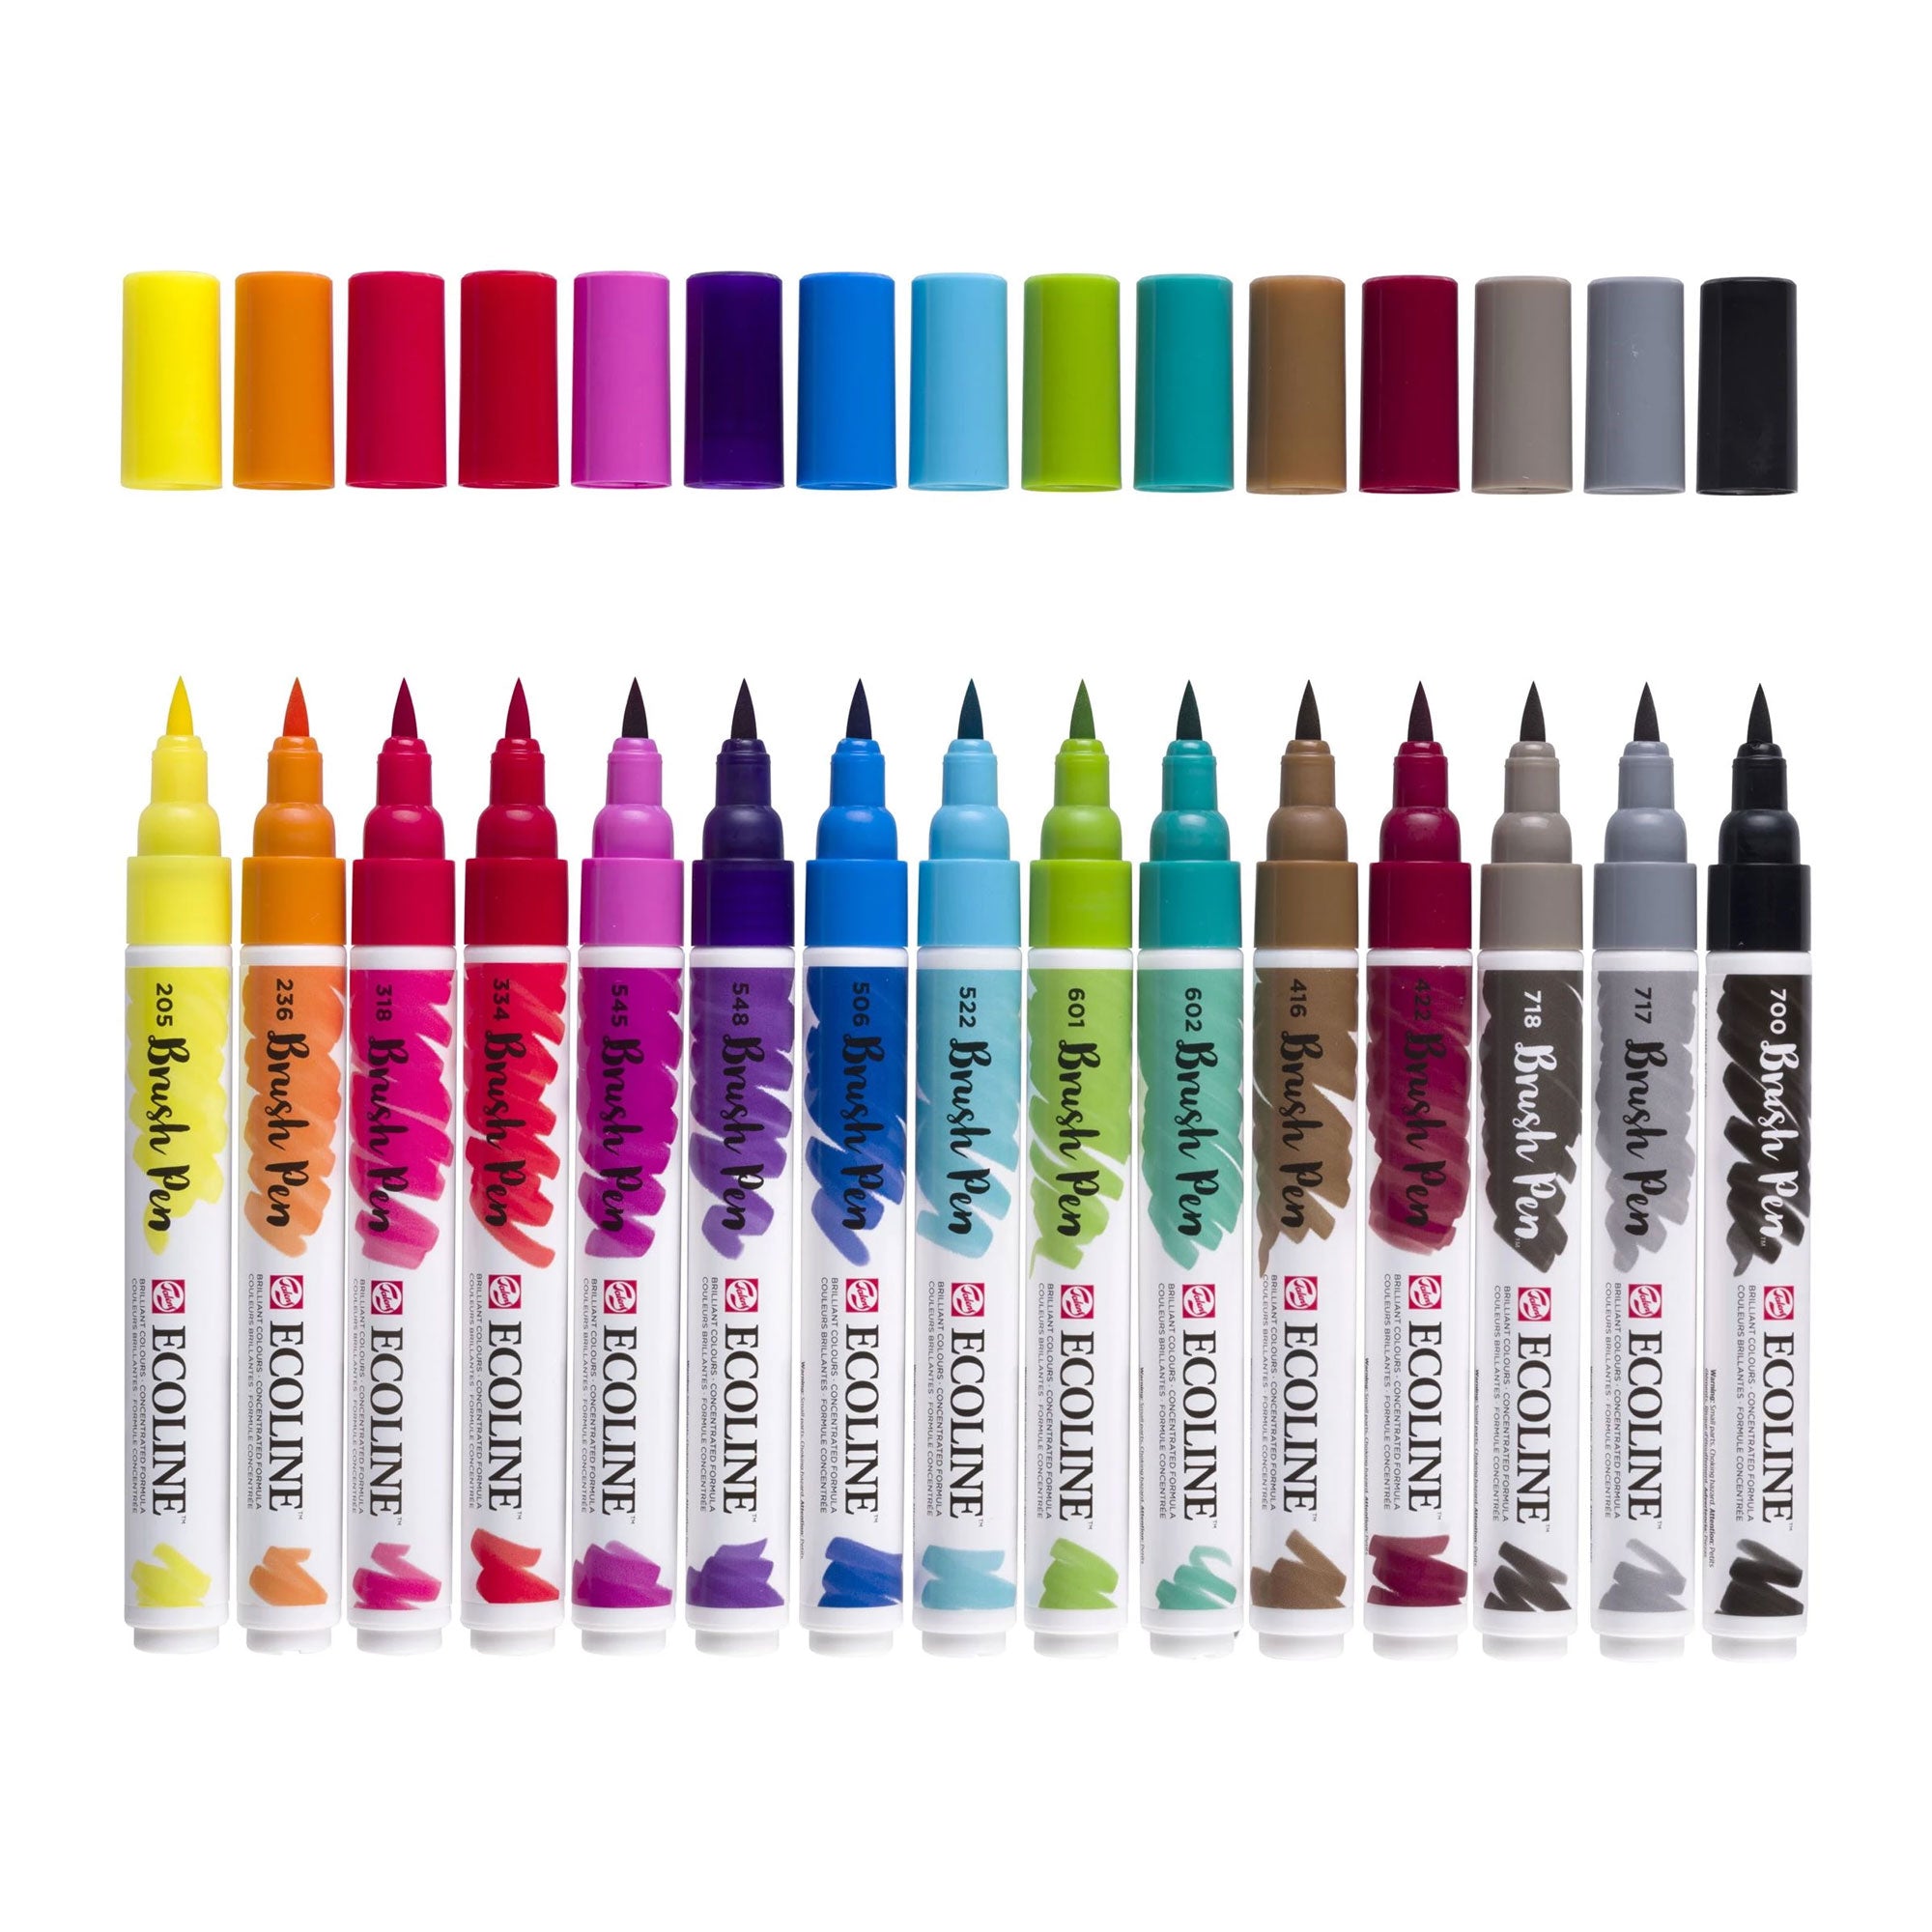 Royal Talens Ecoline Brush Pen Set of 15 Colours - Lids Off